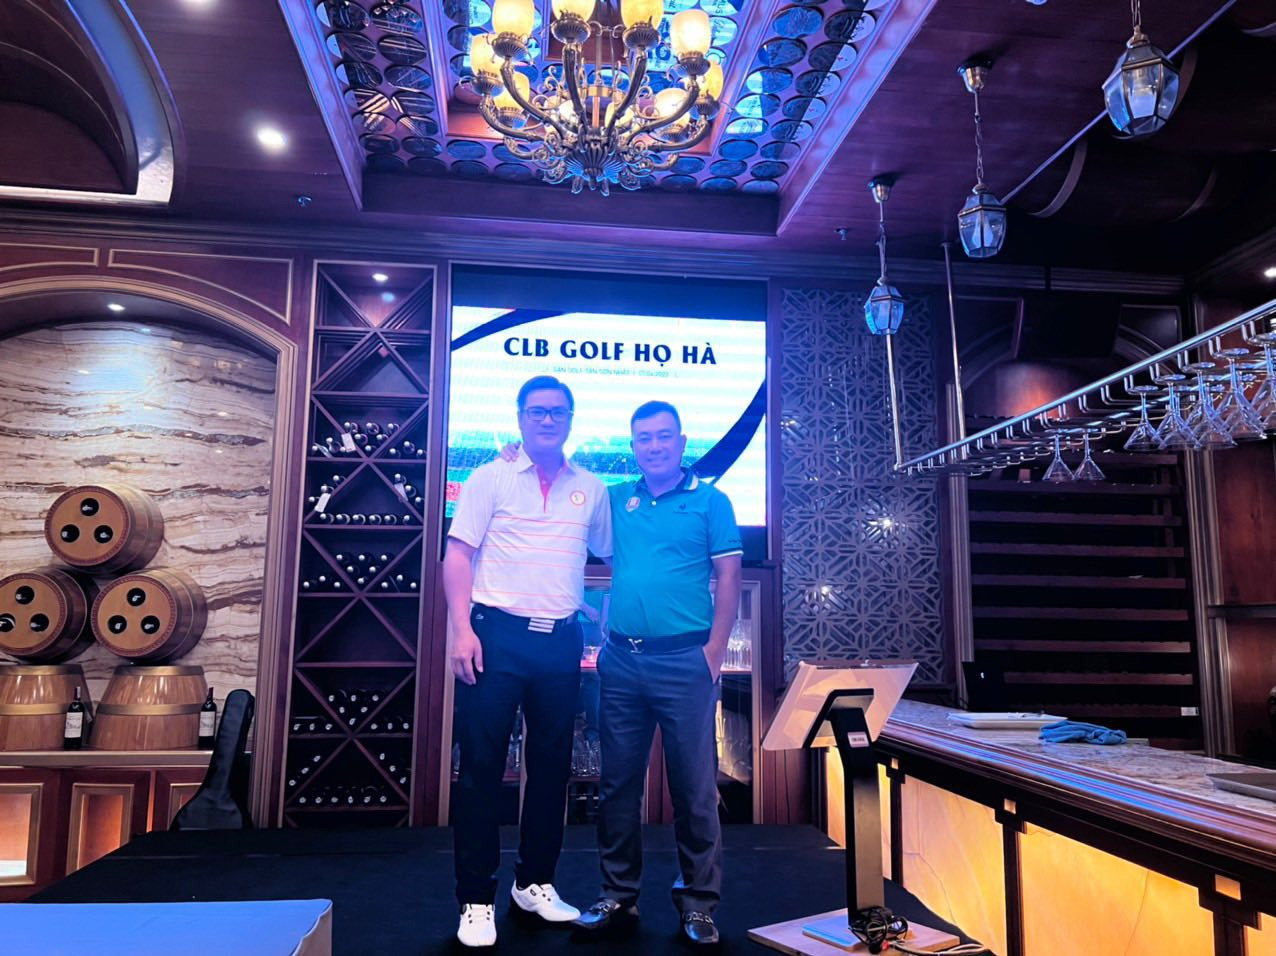 Đội trưởng đội tuyển CLB golf họ Hà Việt Nam - Hà Ngọc Hoàng Lộc đạt giải HIO gần 3 tỷ tại giải Vô địch các CLB dòng họ phía Nam - Ảnh 2.